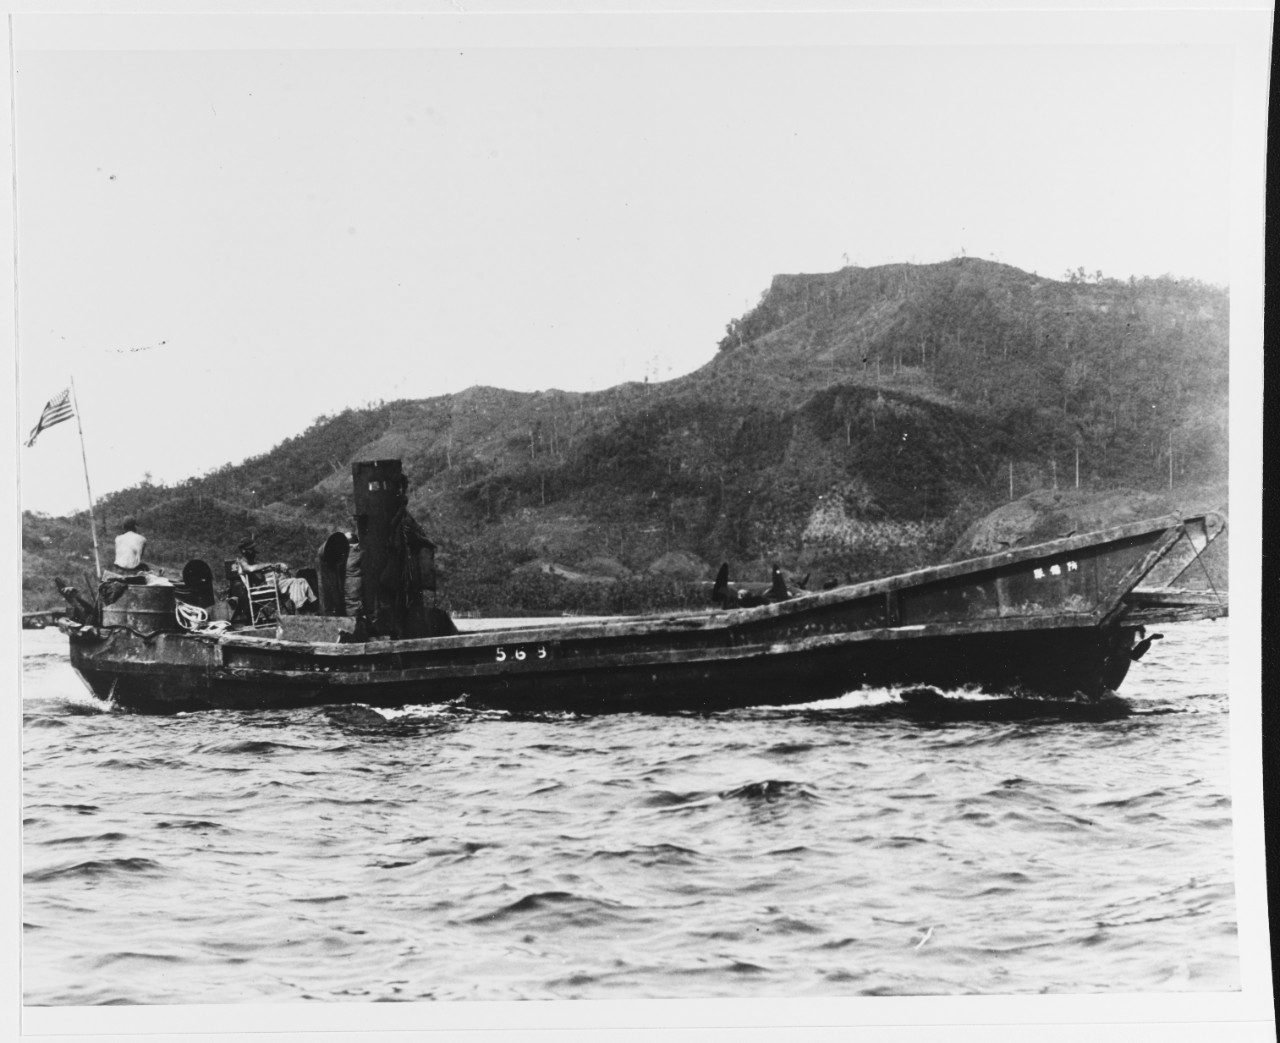 Japanese "DAI HATSU" type landing craft